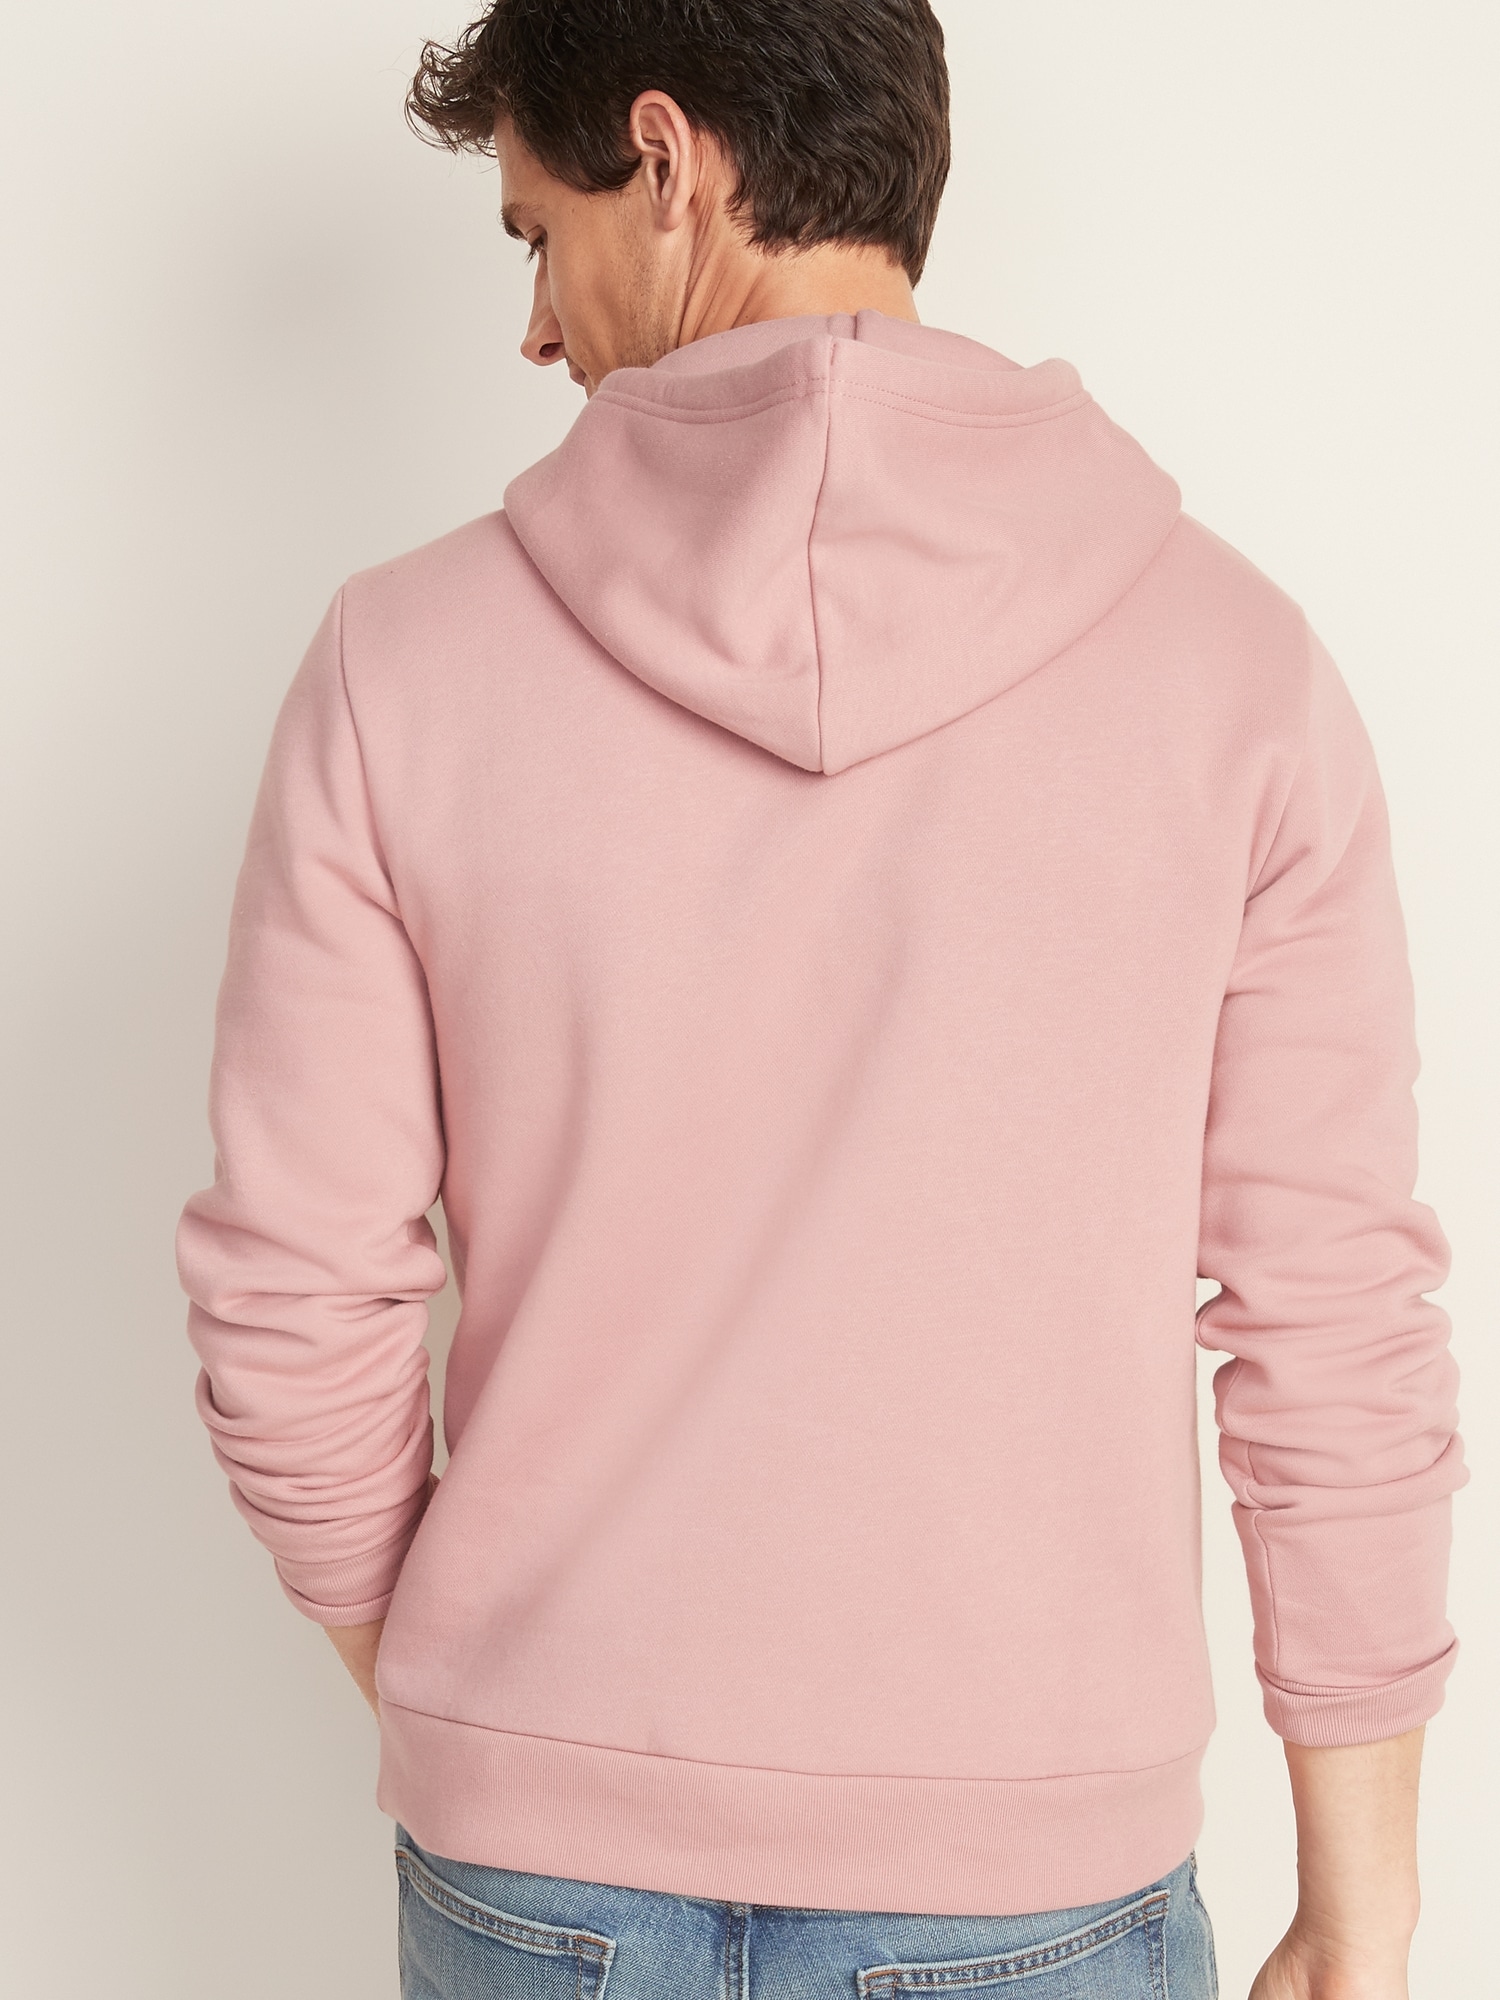 pink hoodie mens